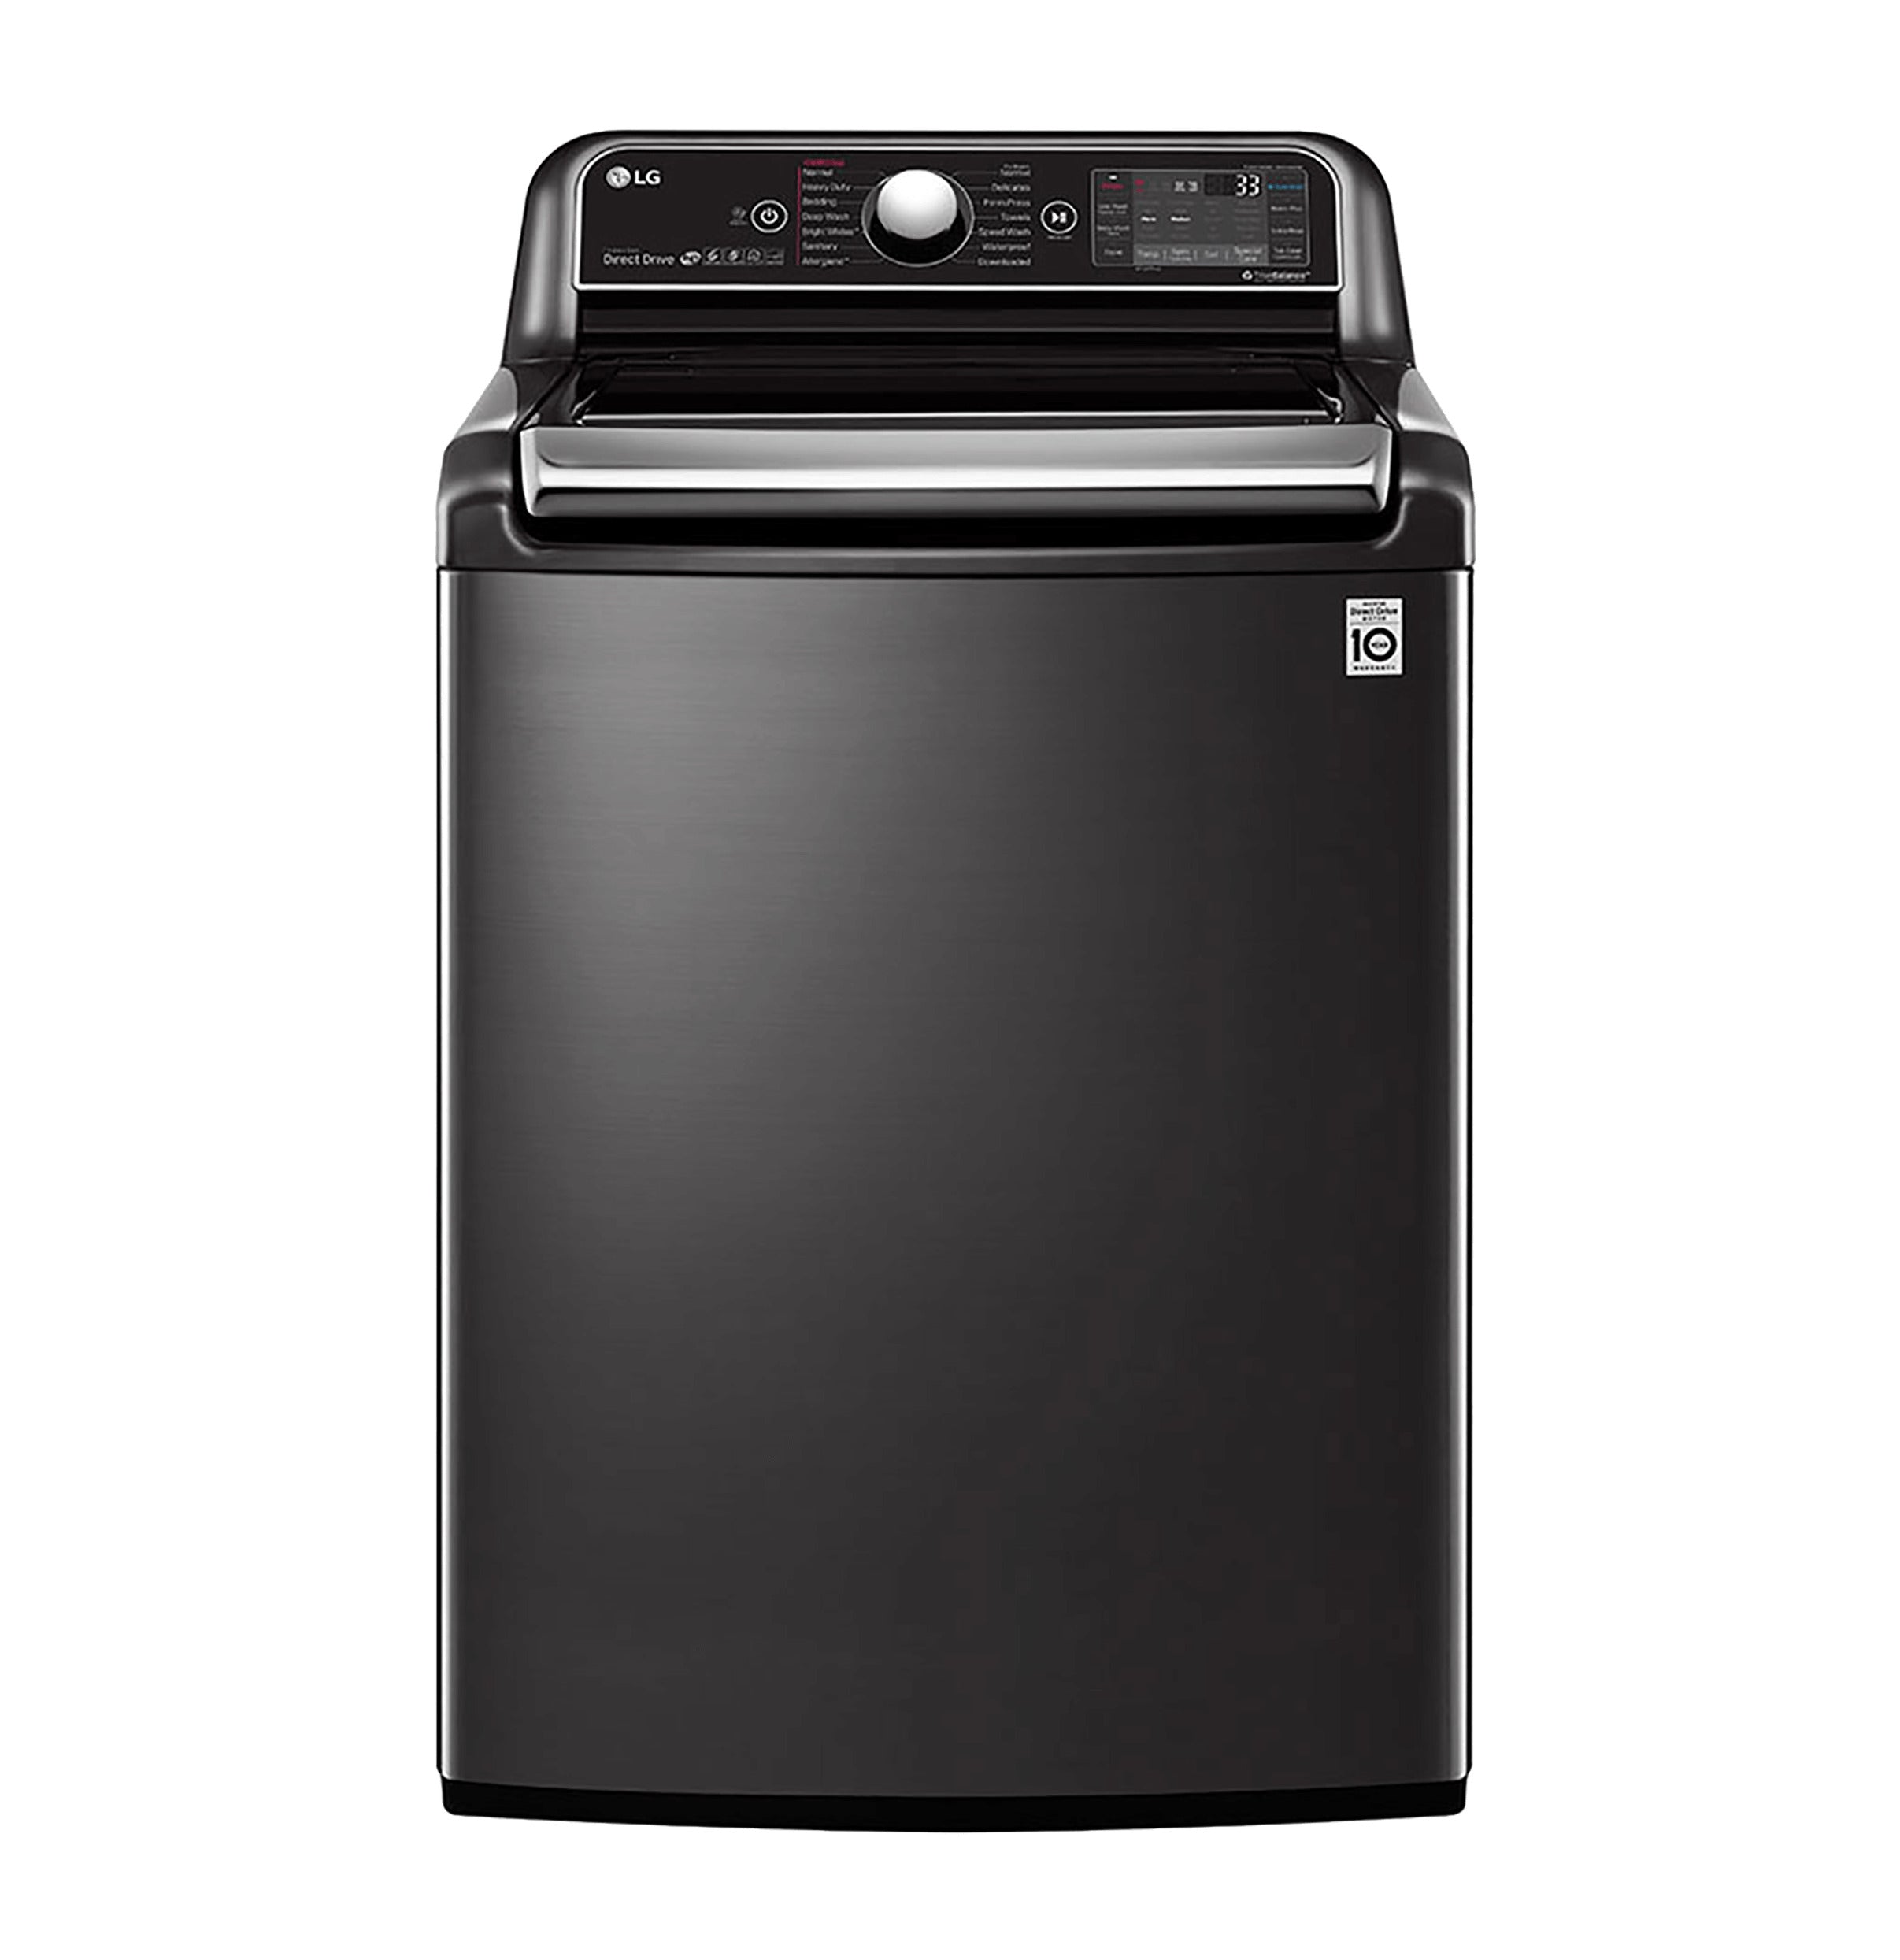 LG 24kg Top Loader Washing Machine Black Stainless Steel T2472EFHSTL